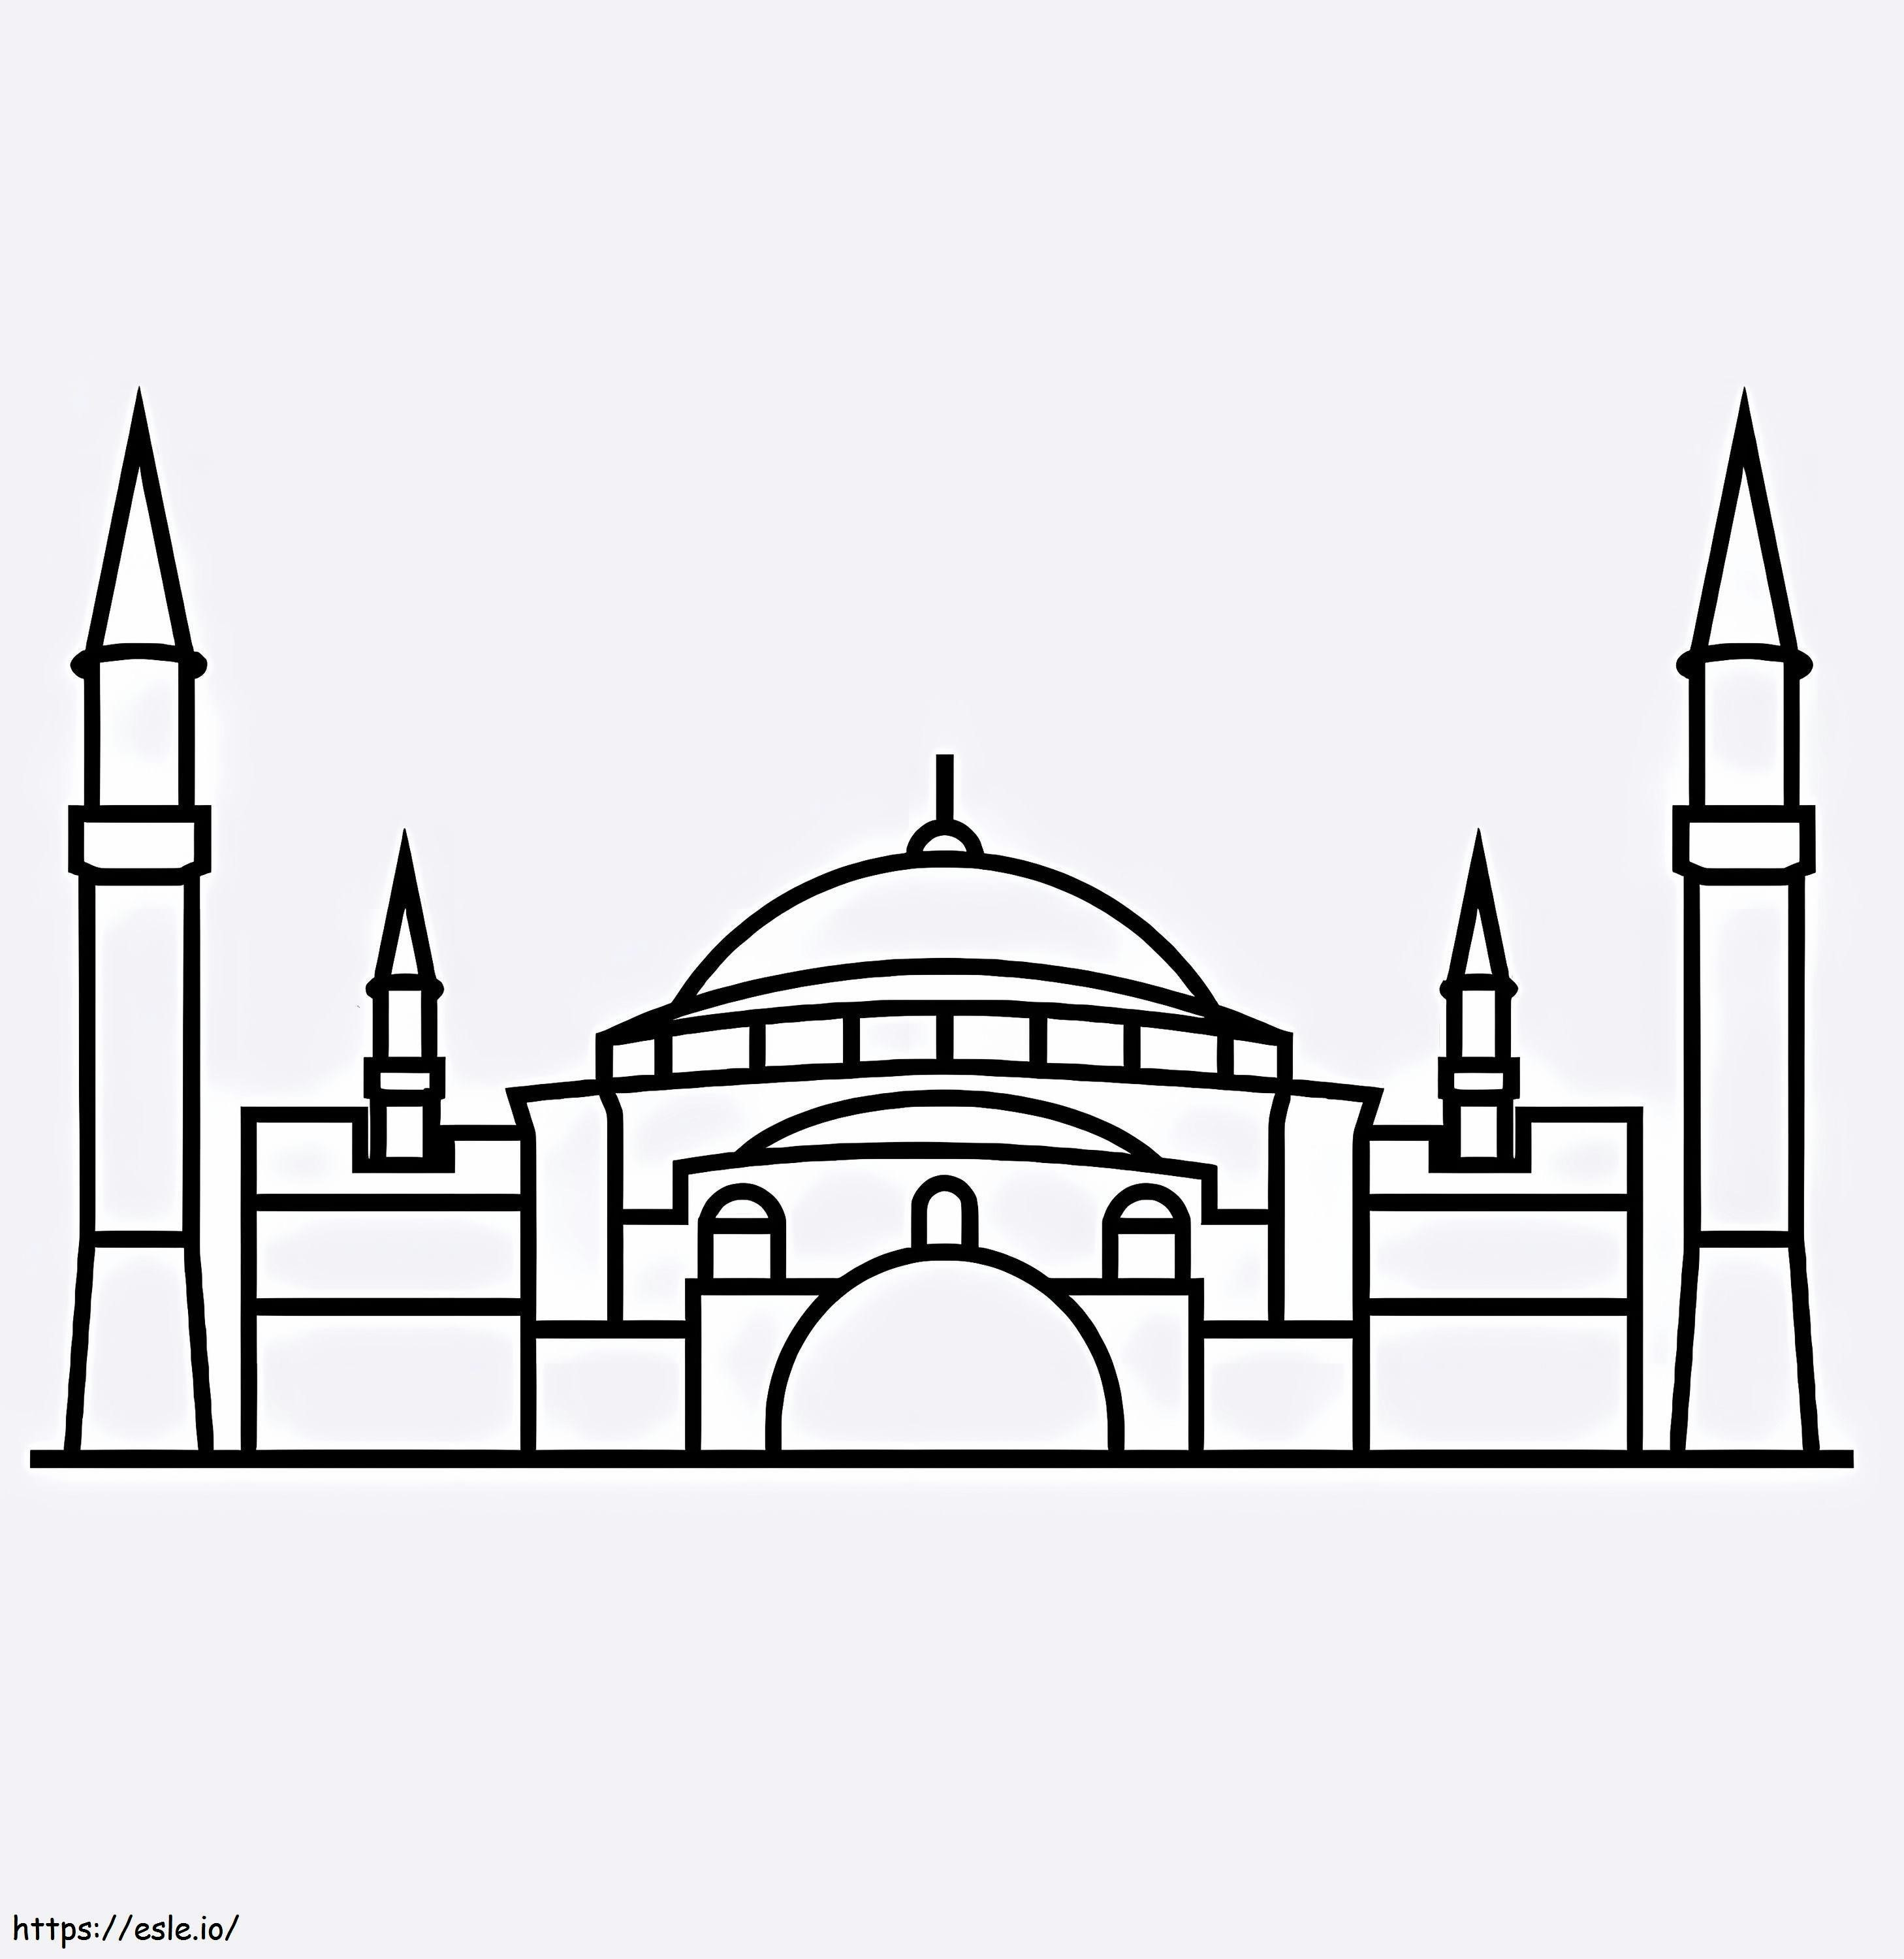 Hagia Sophia 3 kolorowanka